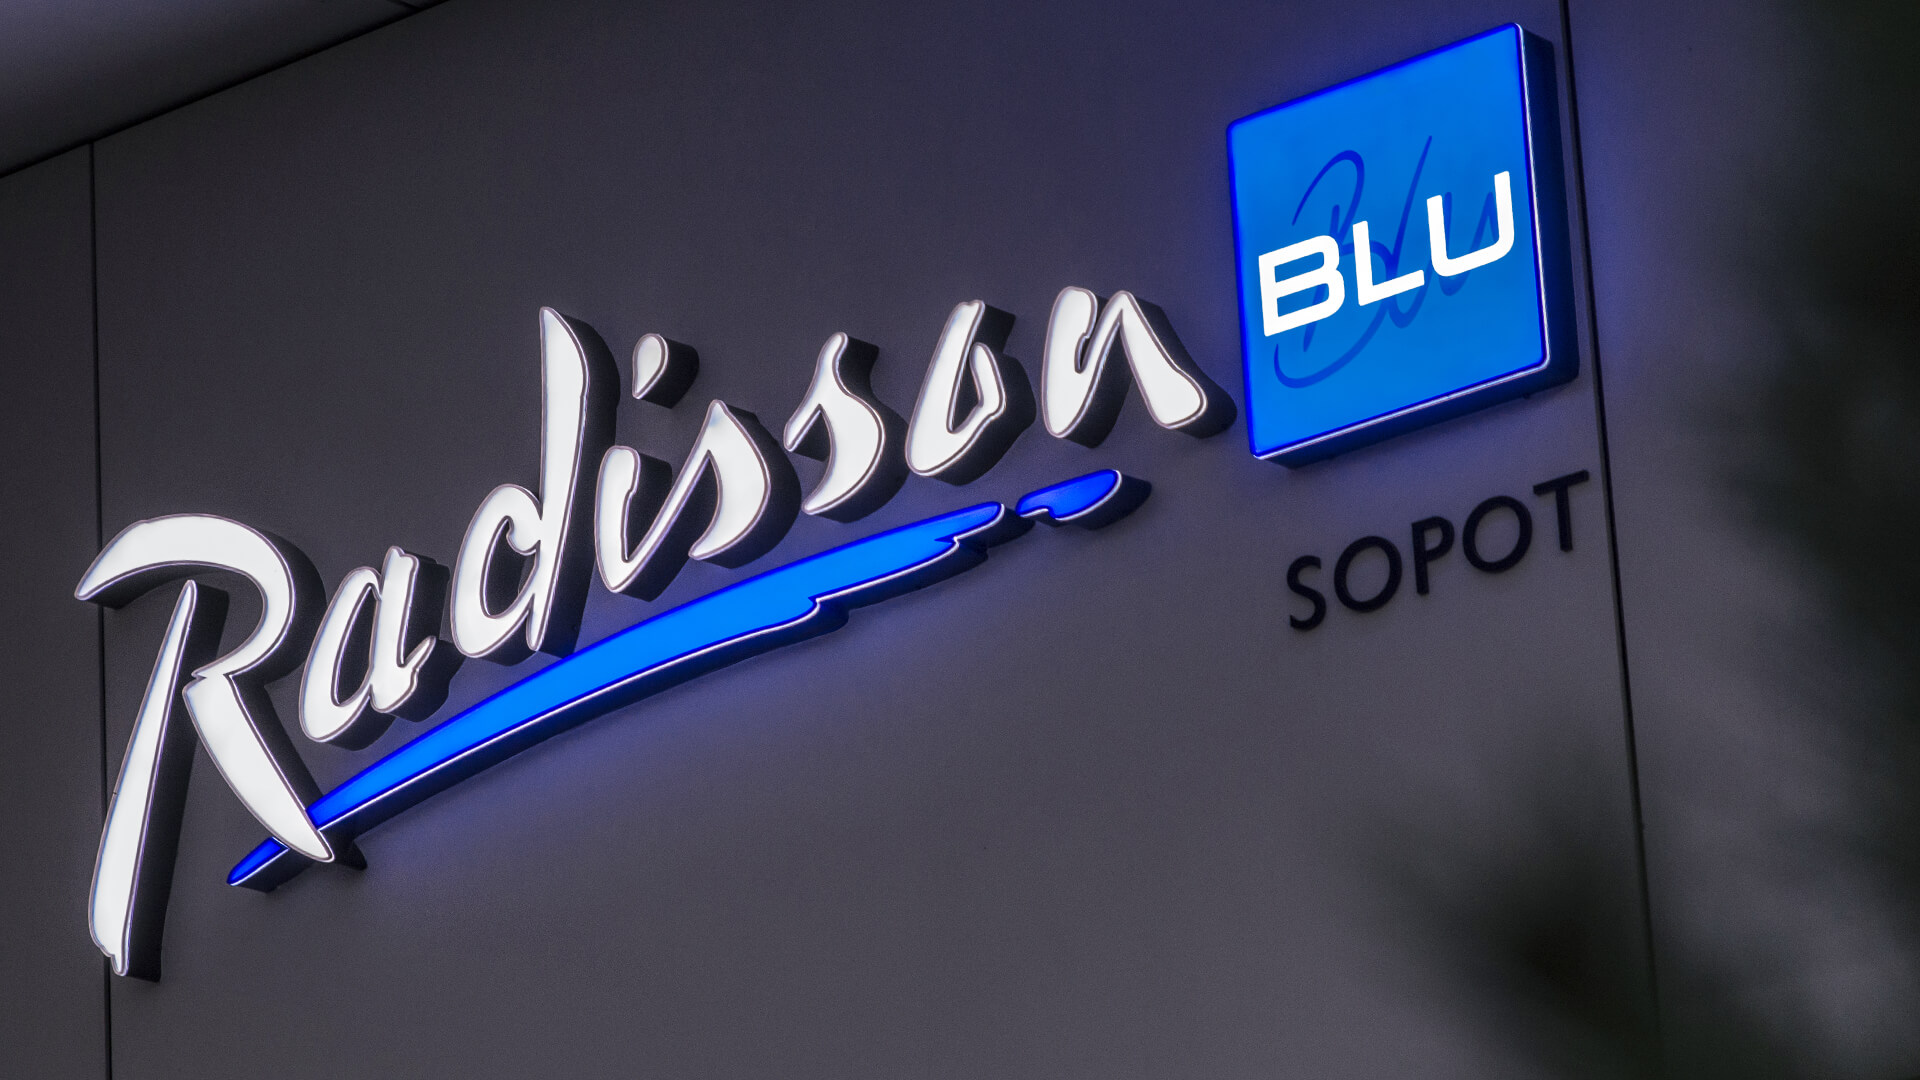 radisson-blu-logo-litery-przy-wejściu - radisson-blu-logo-litery-przy-wejścieu-radison-litery-black-&-white